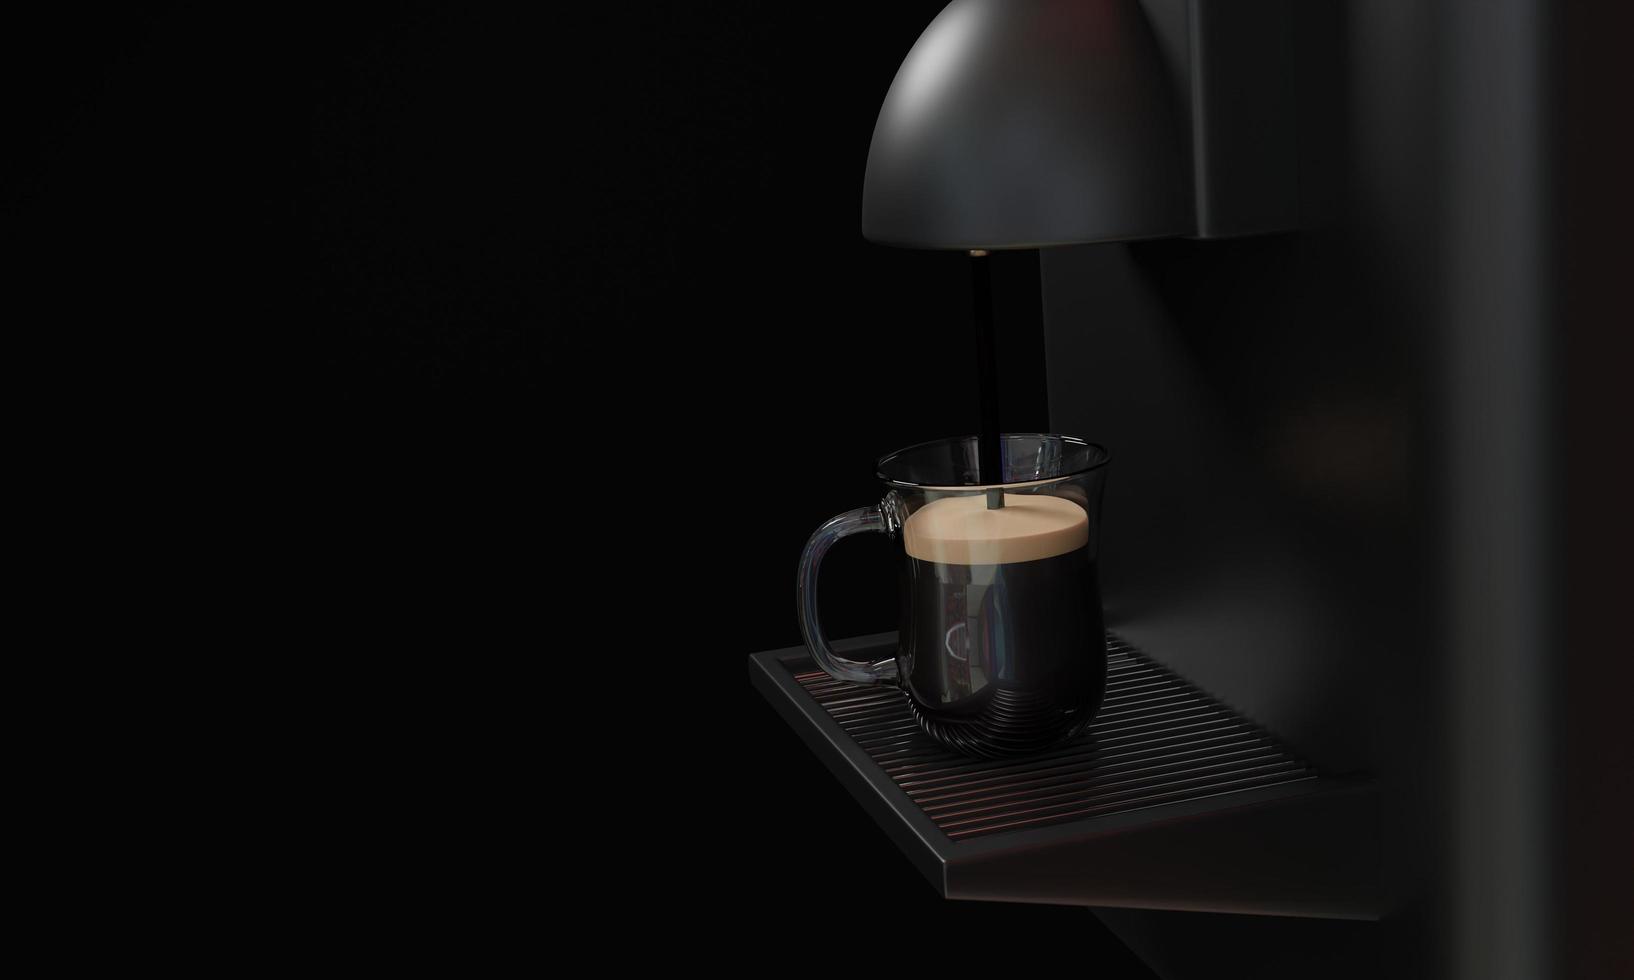 Espresso-Kaffeemaschine glänzend schwarz und glänzendes Metall. Kaffee wird in eine klare Kaffeetasse gegossen. platziert auf einem silbernen Metallgitter im schwarzen Hintergrund. 3D-Rendering foto